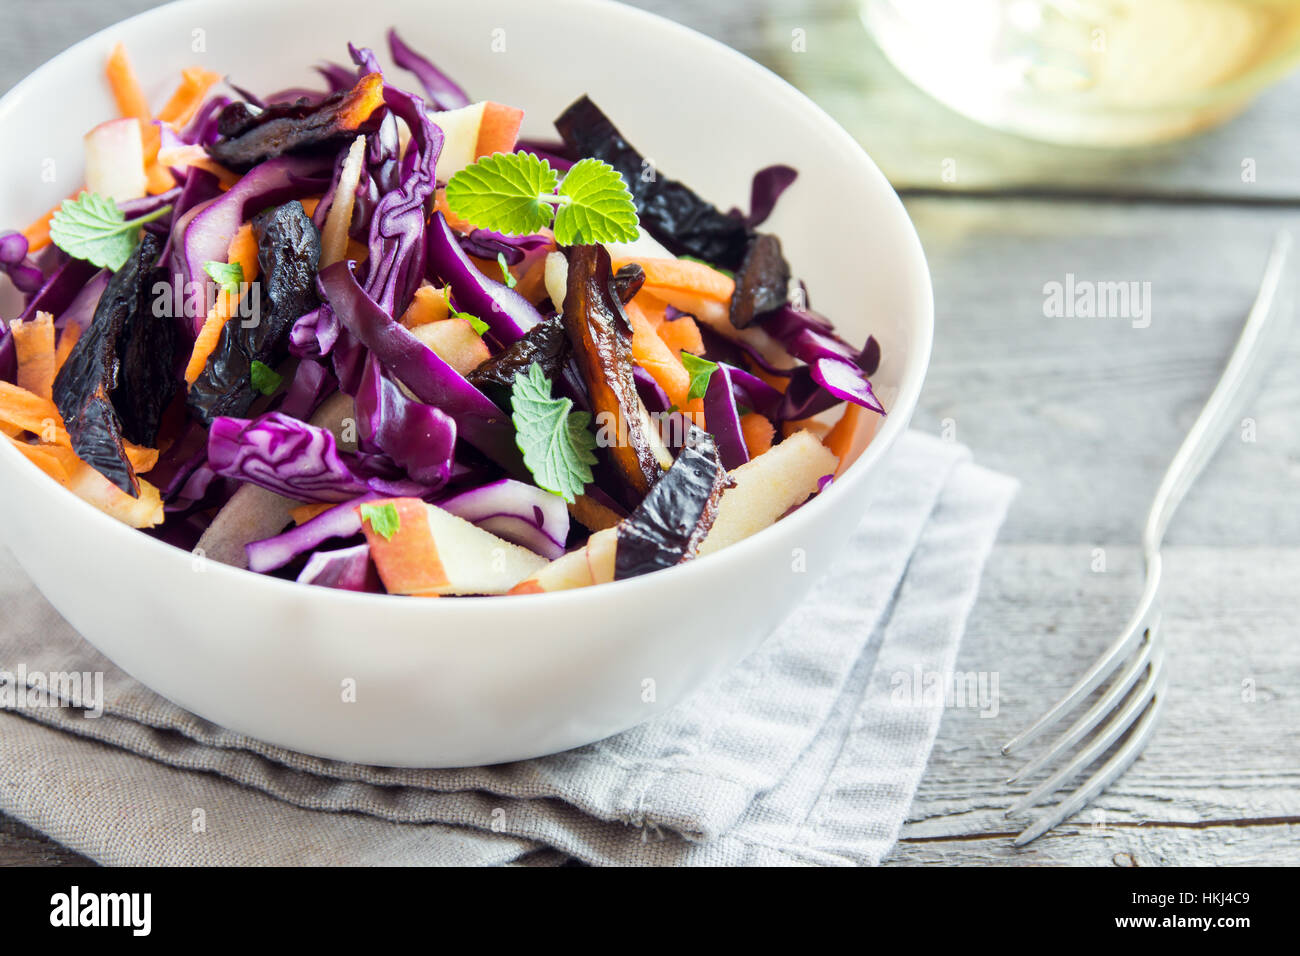 Salade de chou chou rouge avec des carottes, pommes et Pruneaux - alimentation saine, Detox, végétaliens, végétariens, salade de printemps aux légumes Banque D'Images